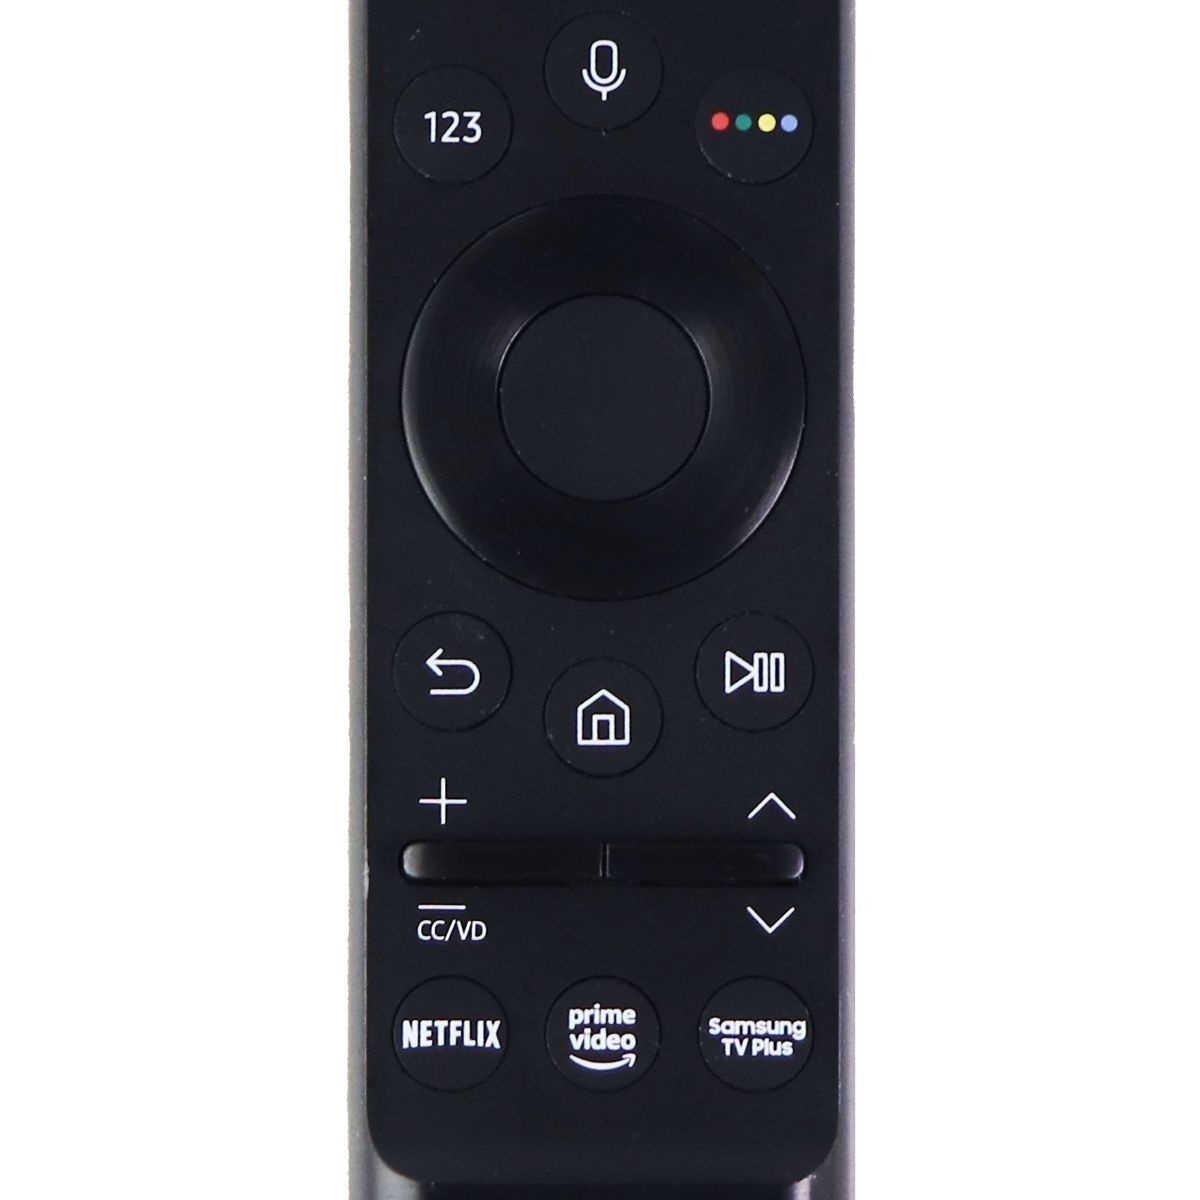 Samsung Remote Control (BN59-01363A) For Select Samsung TVs - Black GRADE A